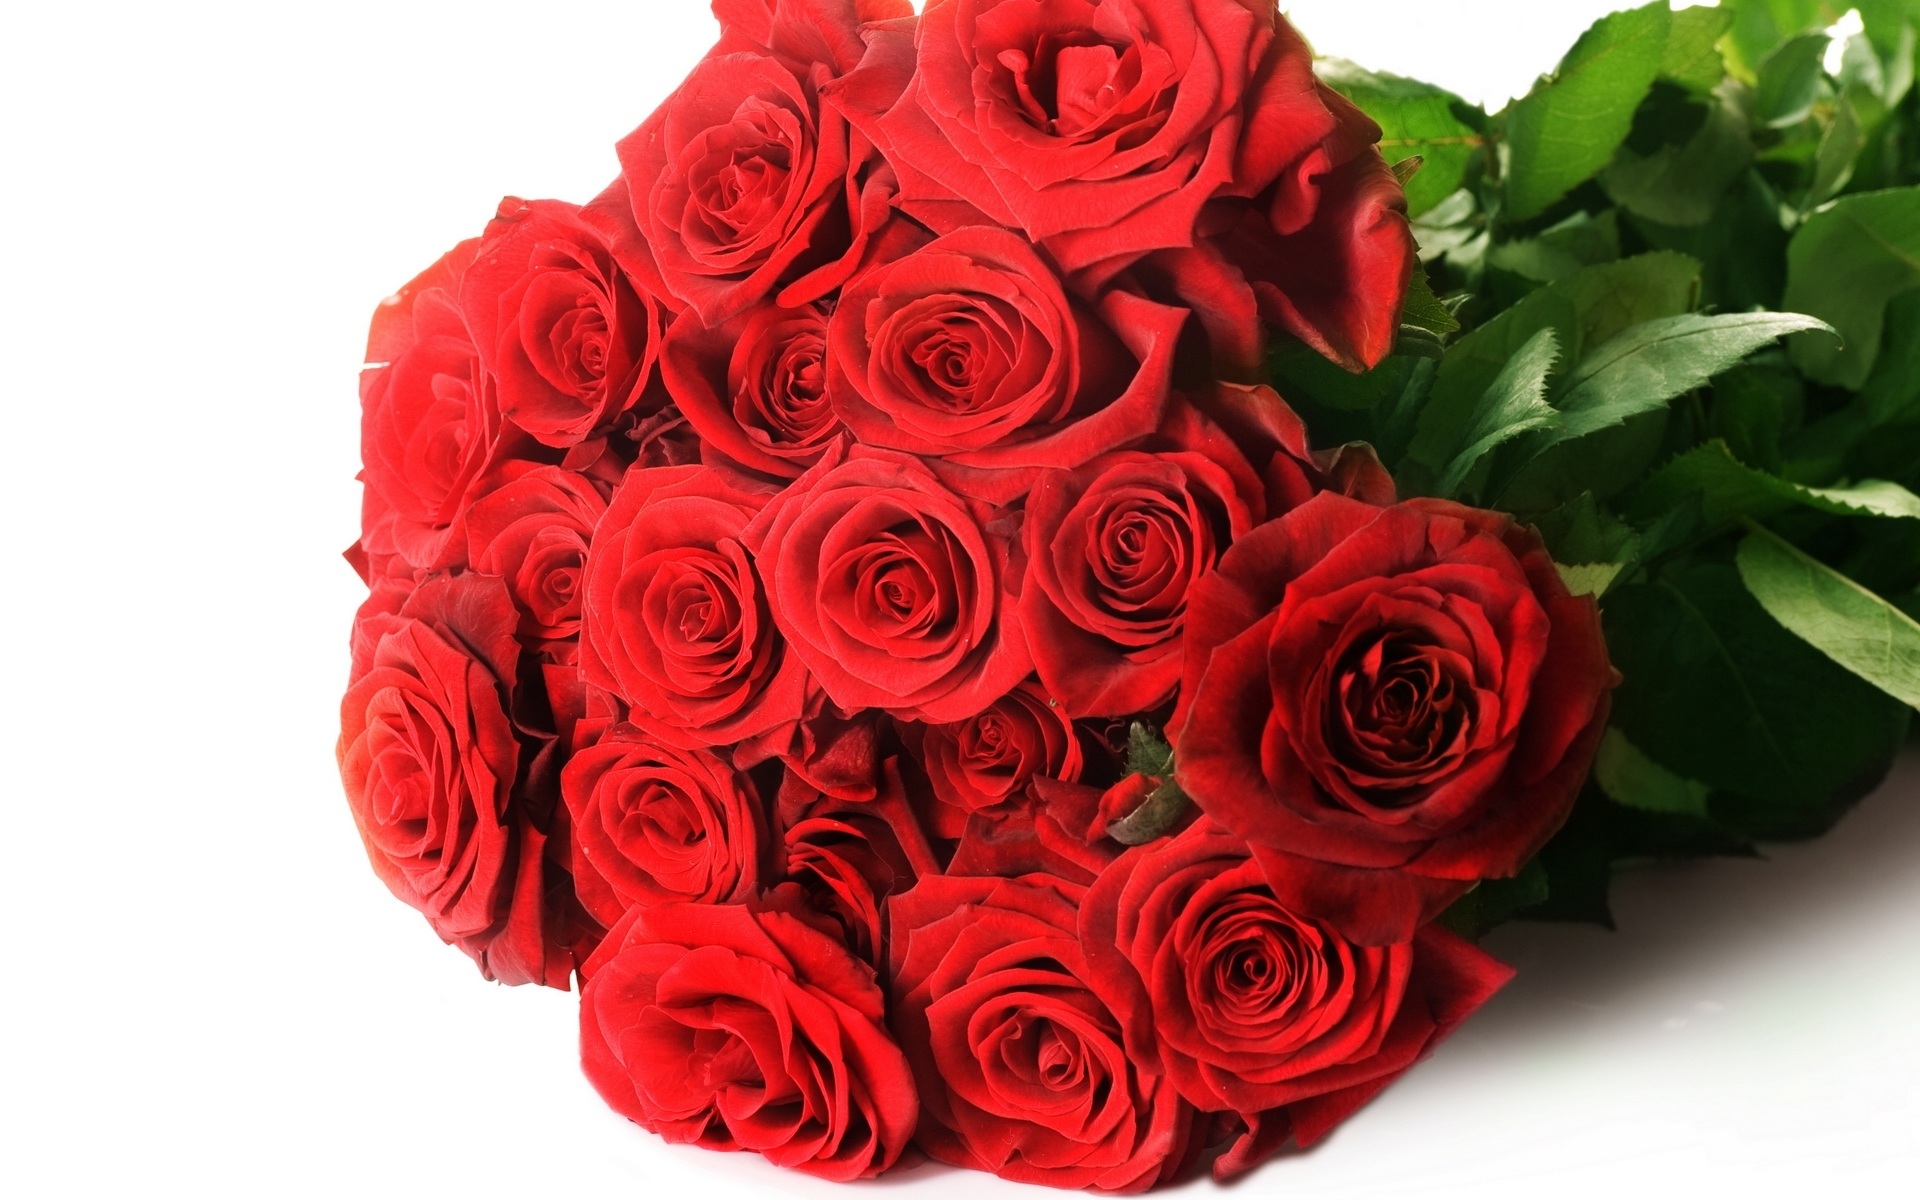 50 Ảnh hoa hồng đẹp và lãng mạn khiến ai xem cũng mê mẩn